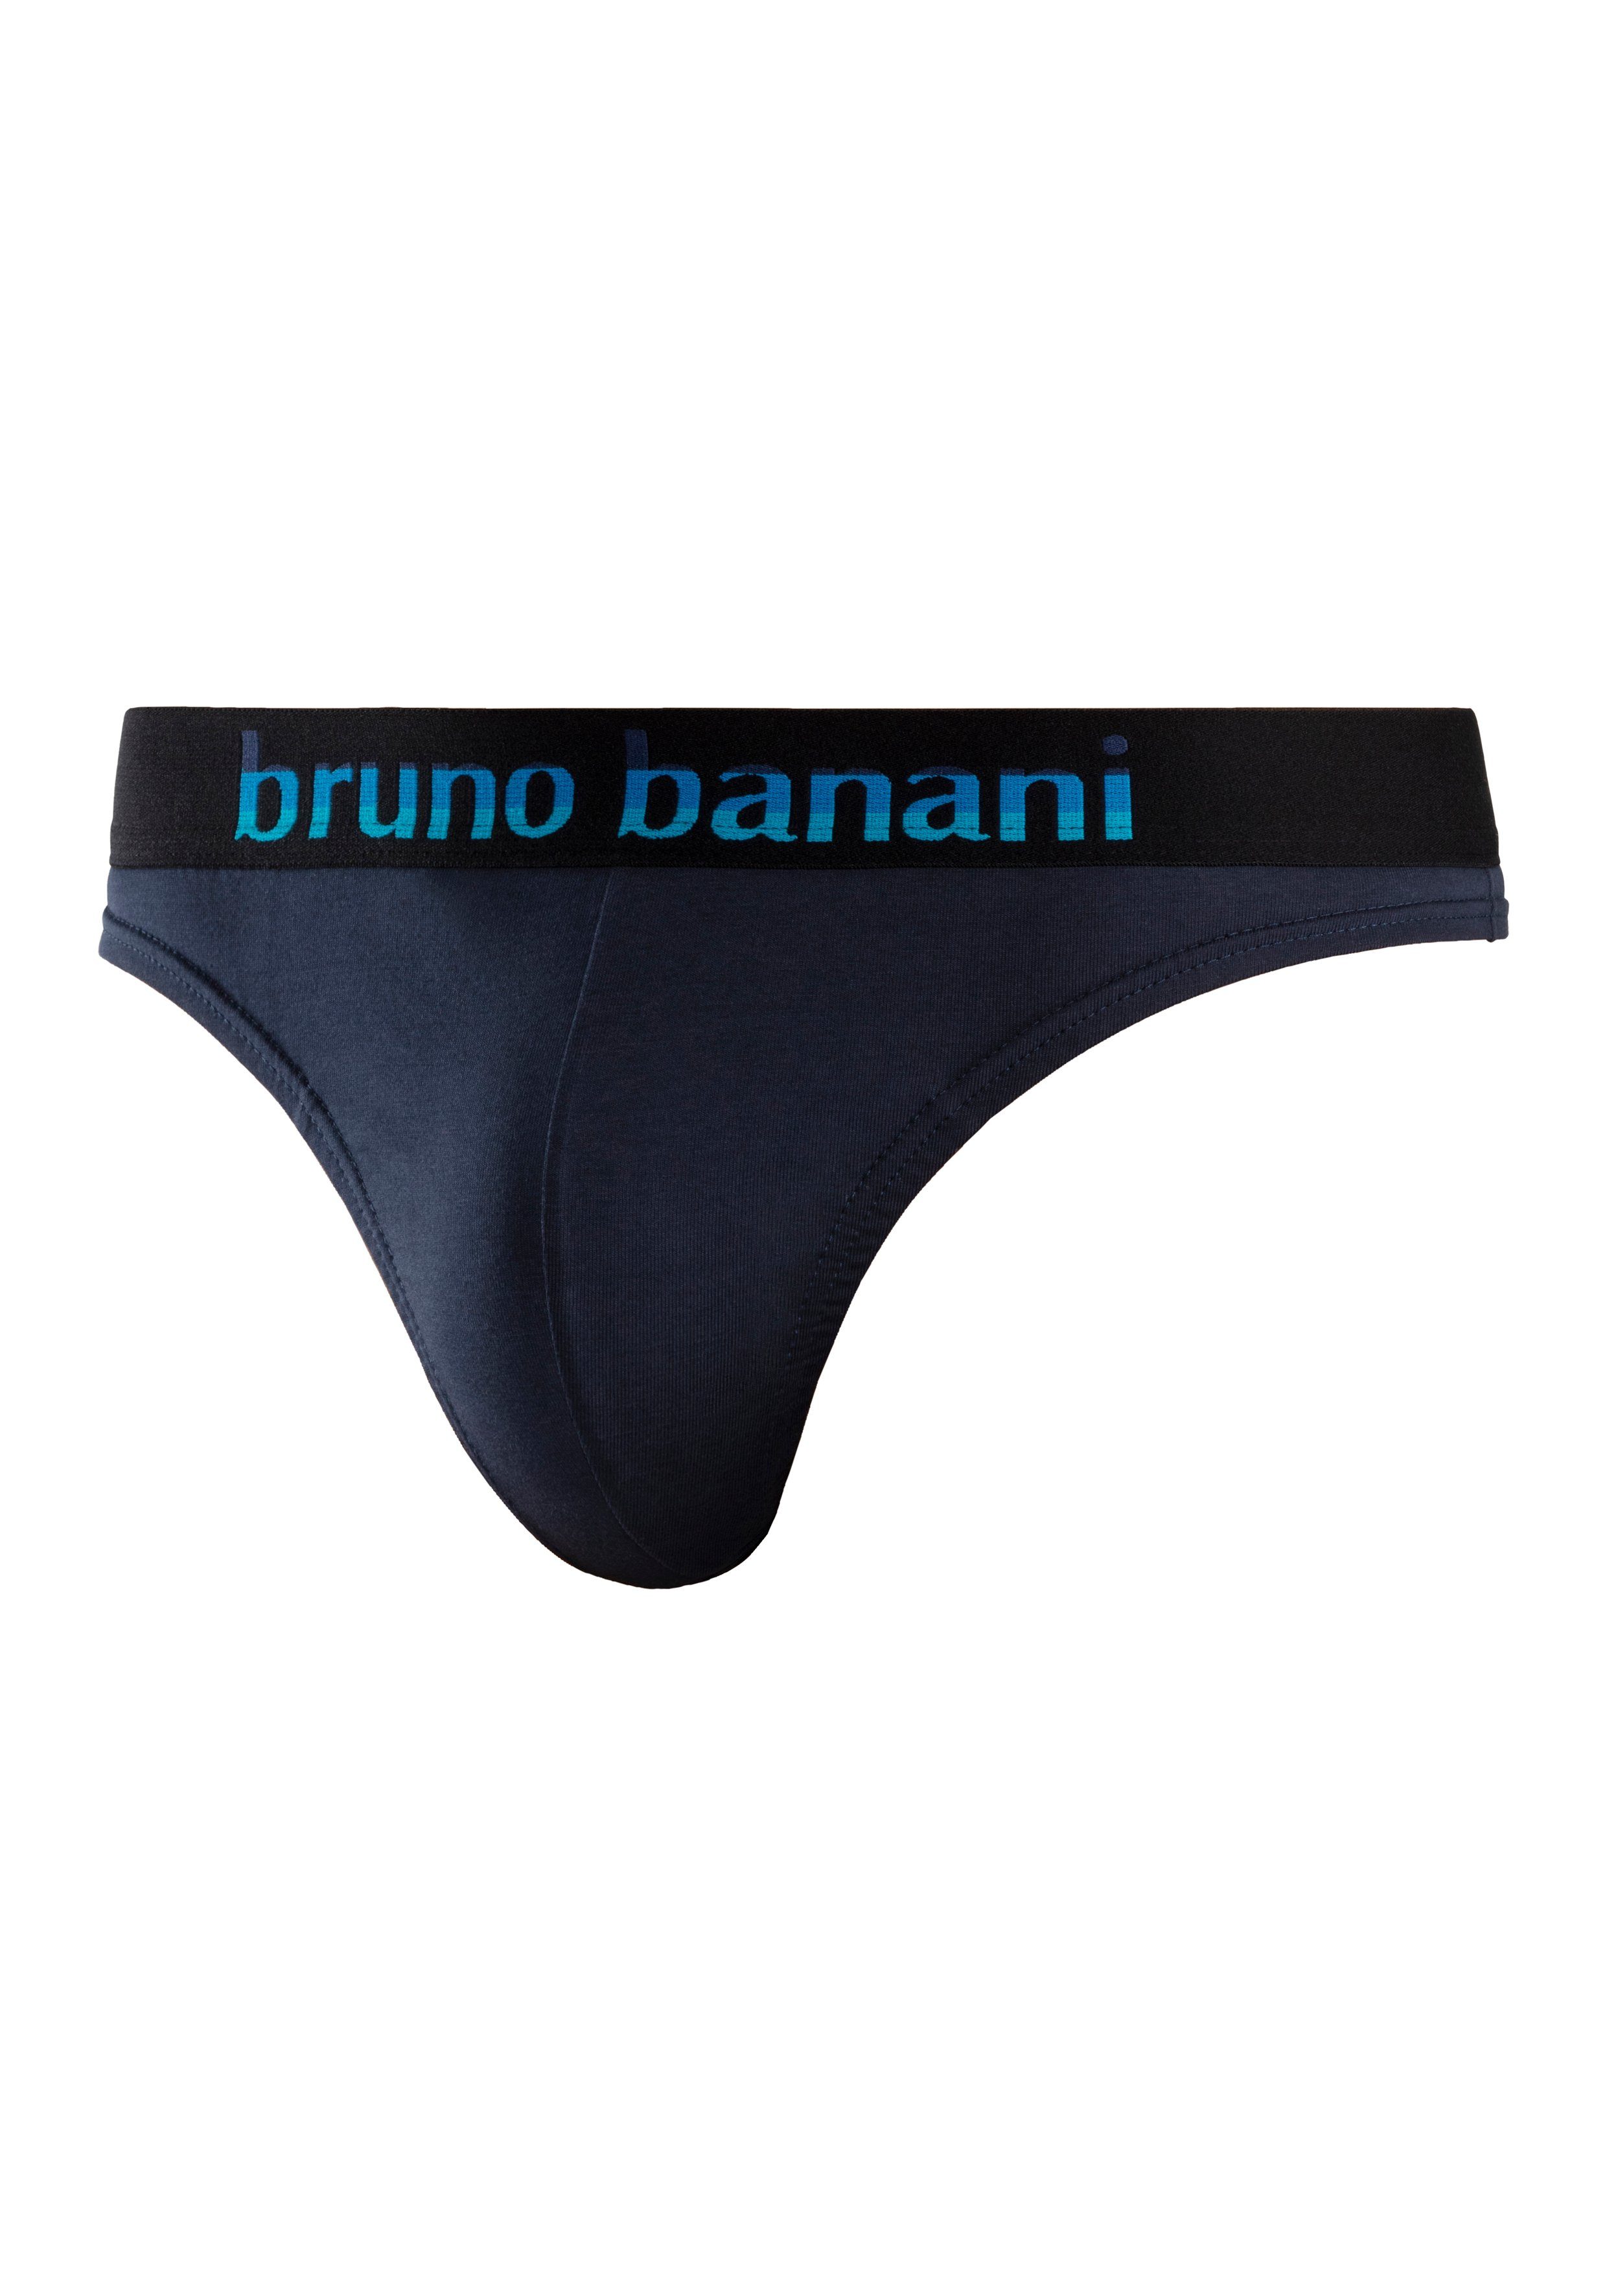 (Packung, 5-St) mit String navy-blau, Streifen grau-meliert-mint, Webbund schwarz-pink, schwarz-grau Logo Banani anthrazit-meliert-gelb, Bruno